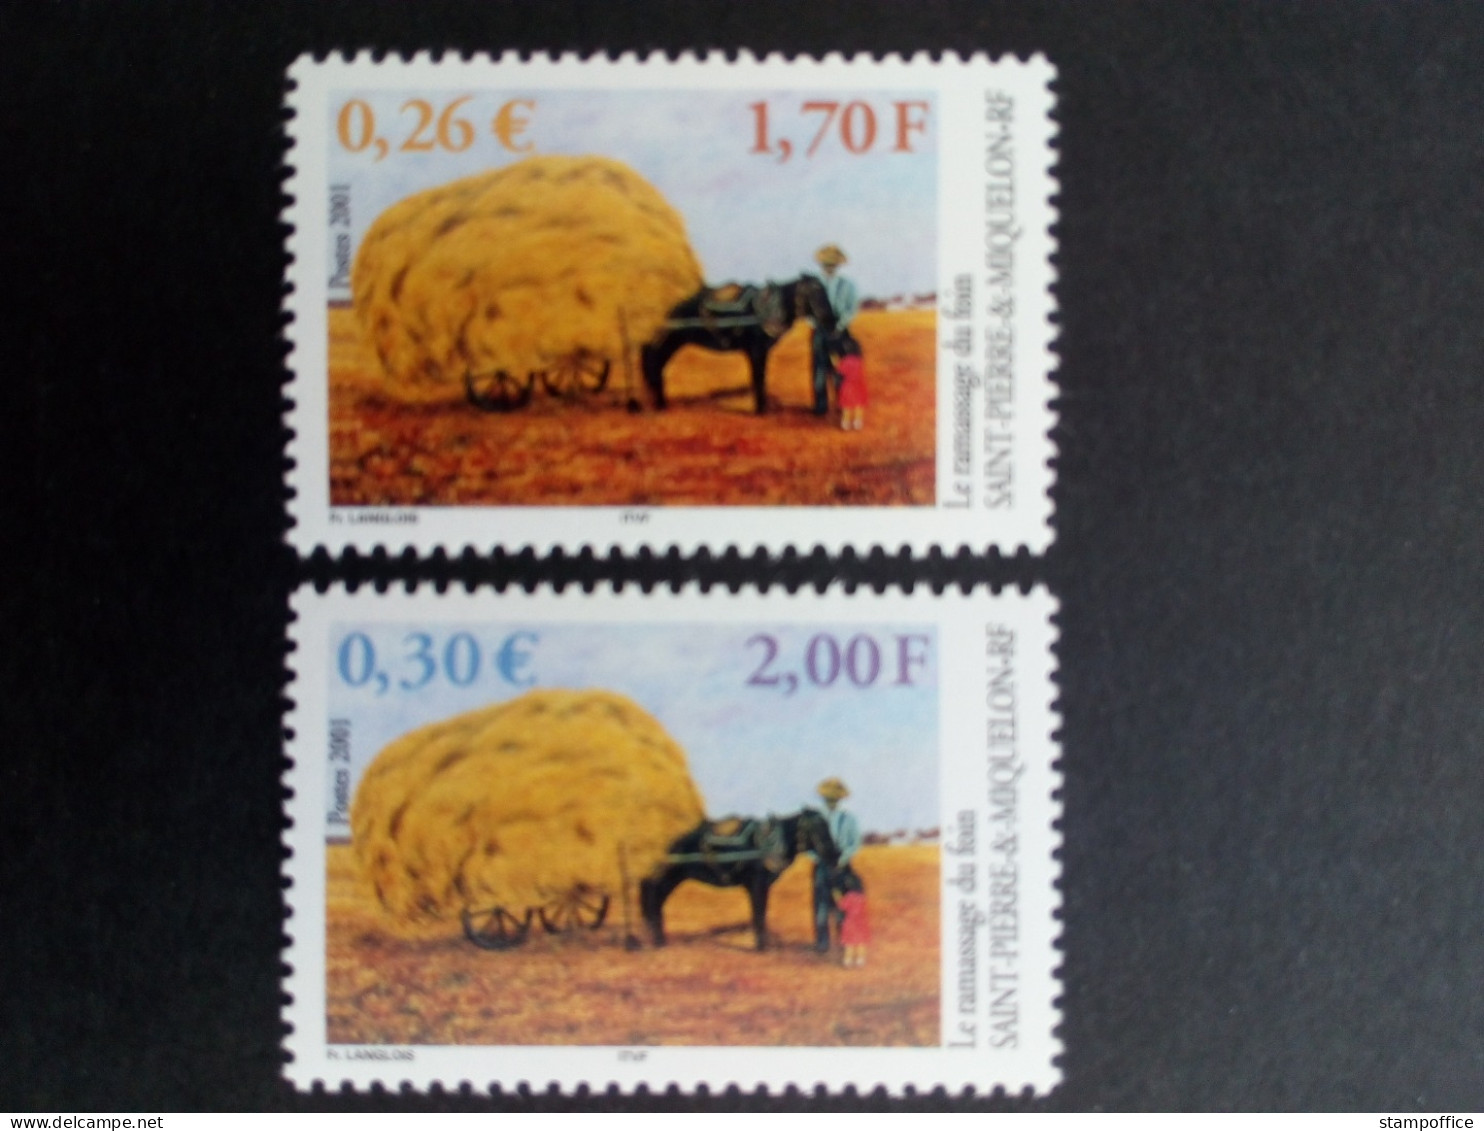 SAINT-PIERRE ET MIQUELON MI-NR. 827-828 POSTFRISCH(MINT) HEUERNTE 2001 - Unused Stamps